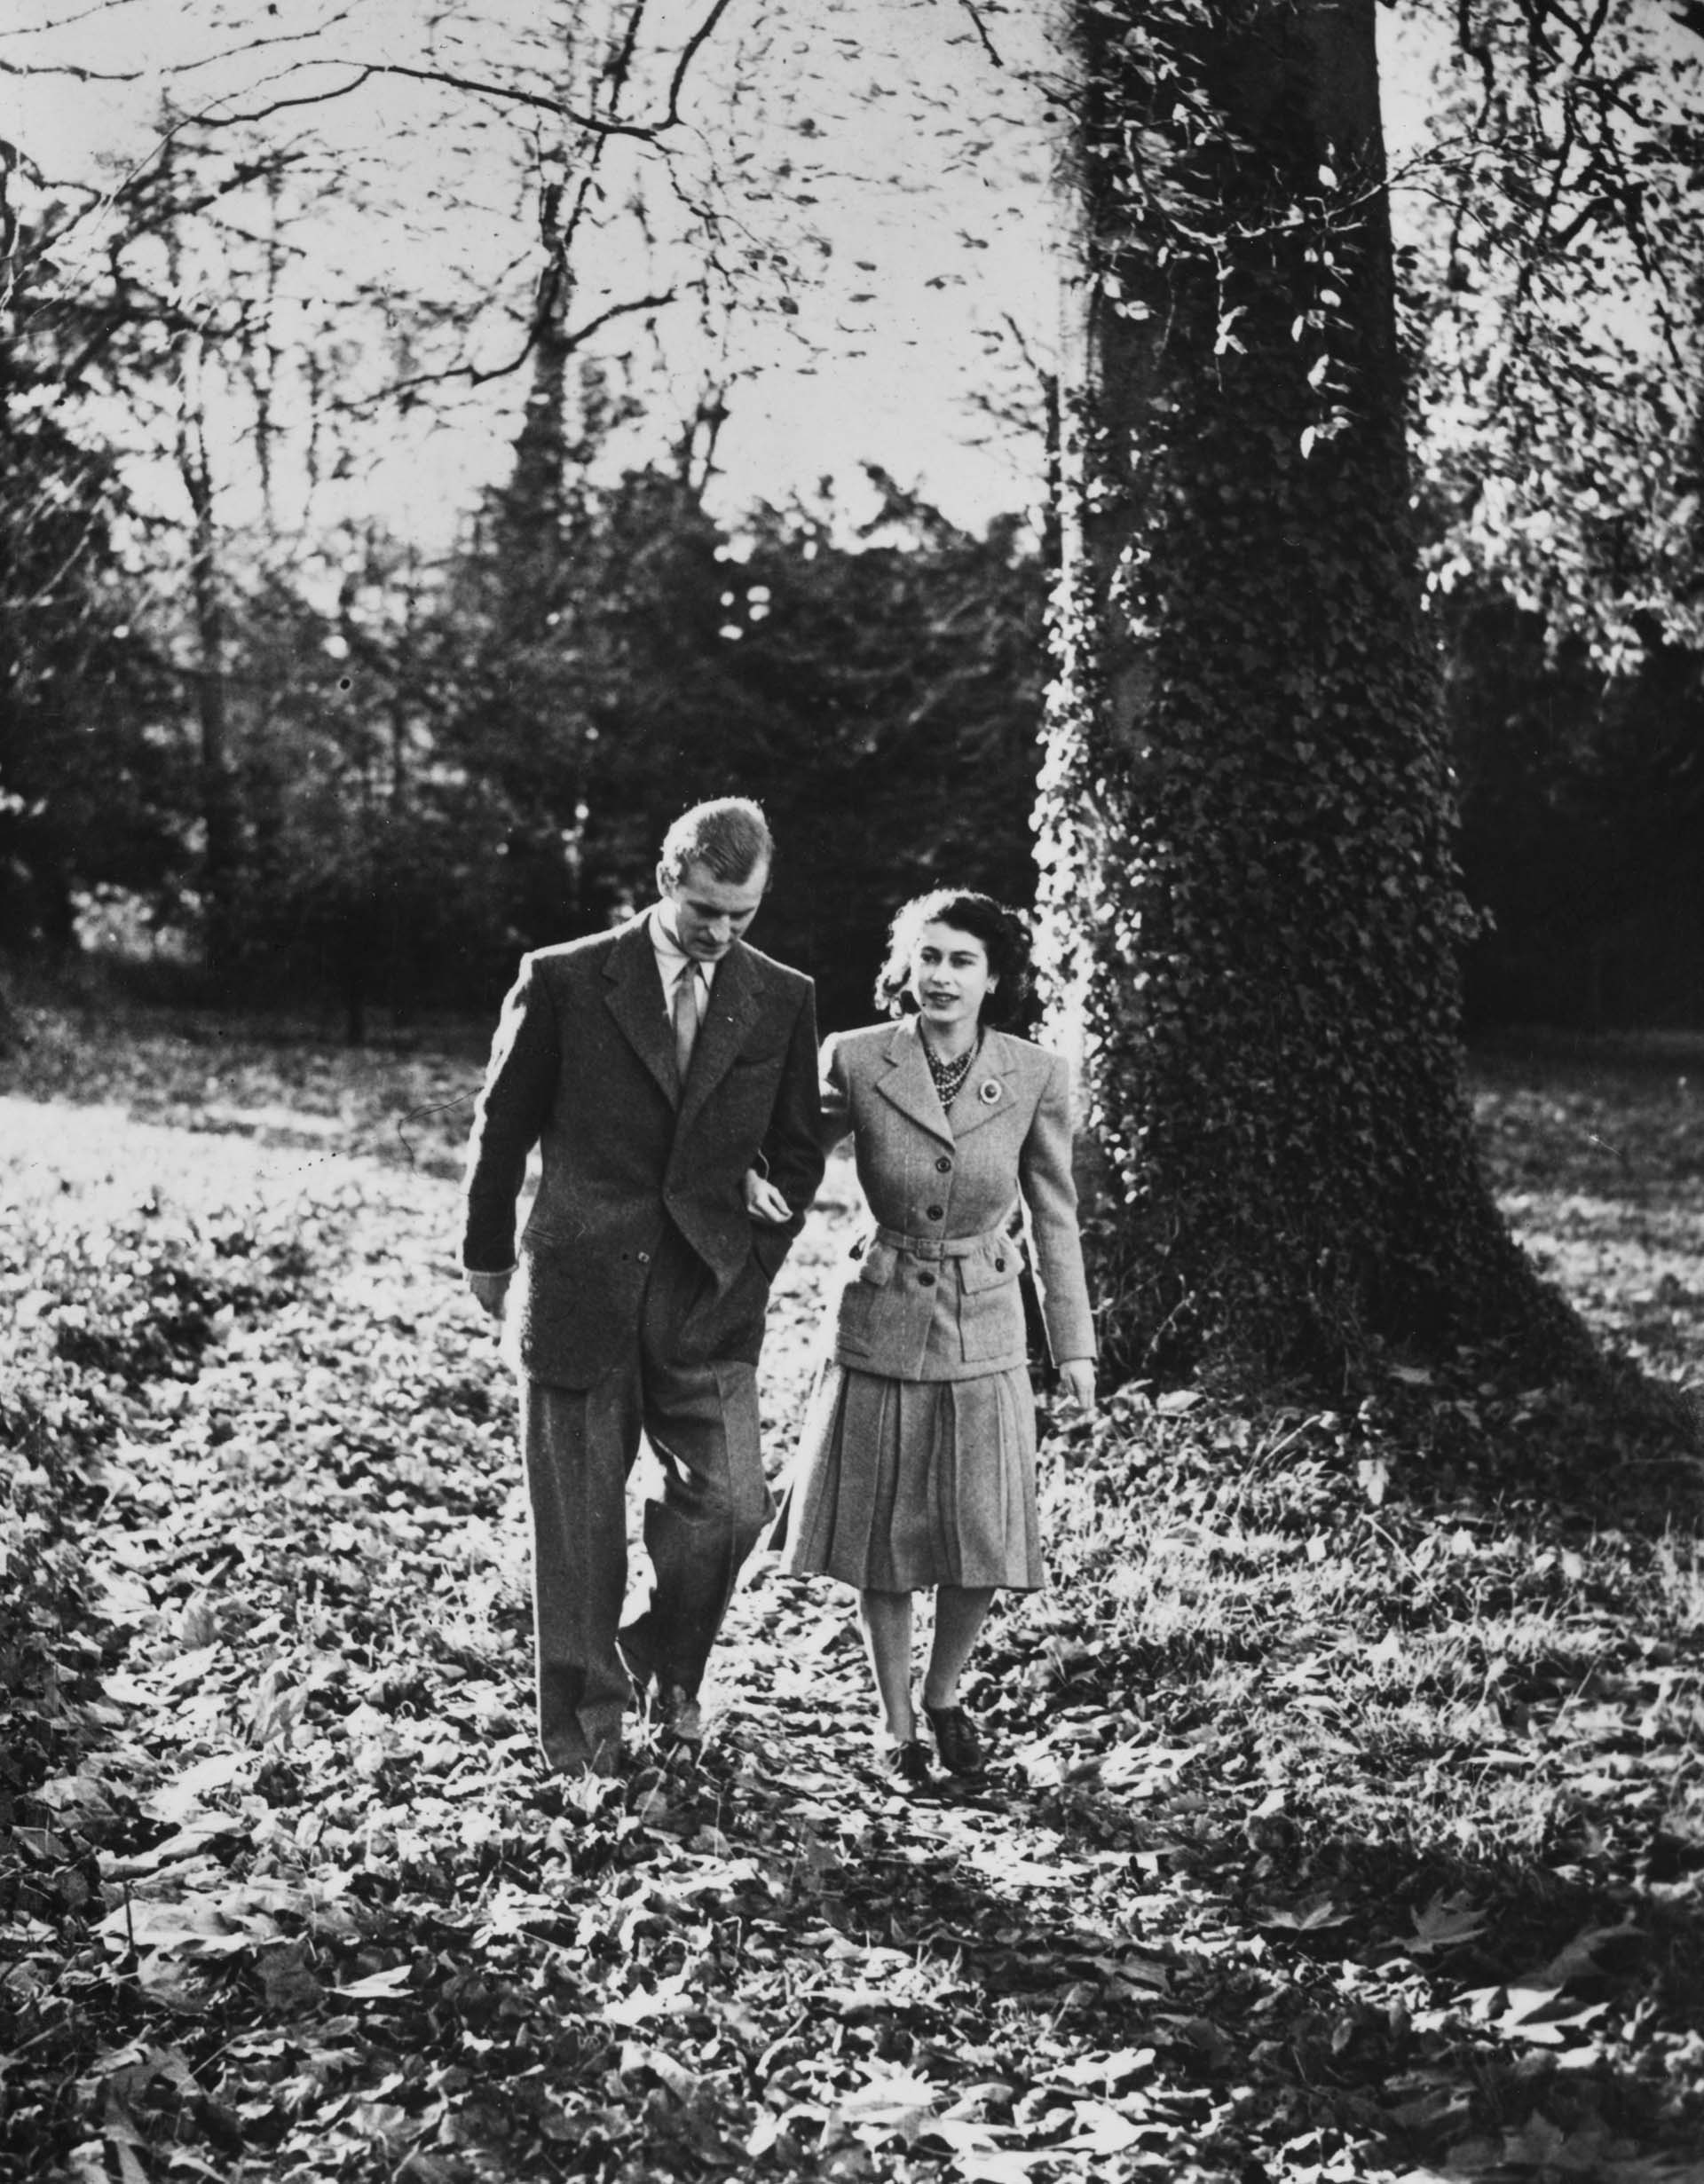 24 de noviembre de 1947:  La princesa Isabel (más tarde la reina Isabel II) y el duque de Edimburgo de luna de miel en Broadlands, cerca de Romsey, Hampshire, paseando por la finca de Broadlands después de un servicio en la abadía de Romsey. (Photo by Topical Press Agency/Getty Images)